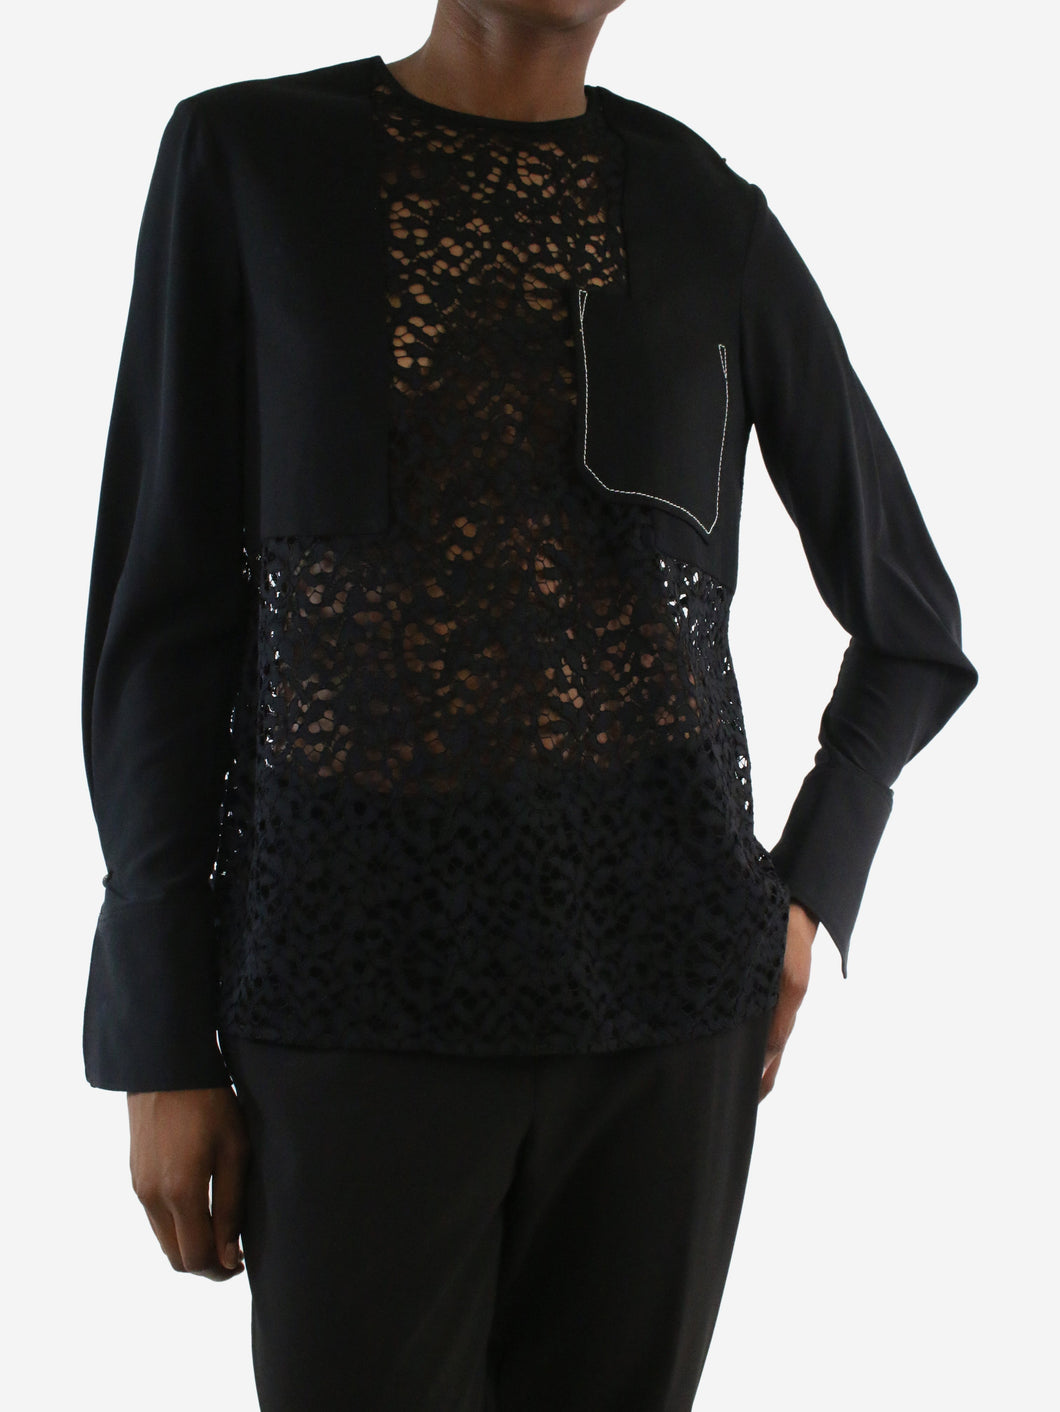 Black lace pocket blouse - Size US 0 Tops 3.1 Phillip Lim 